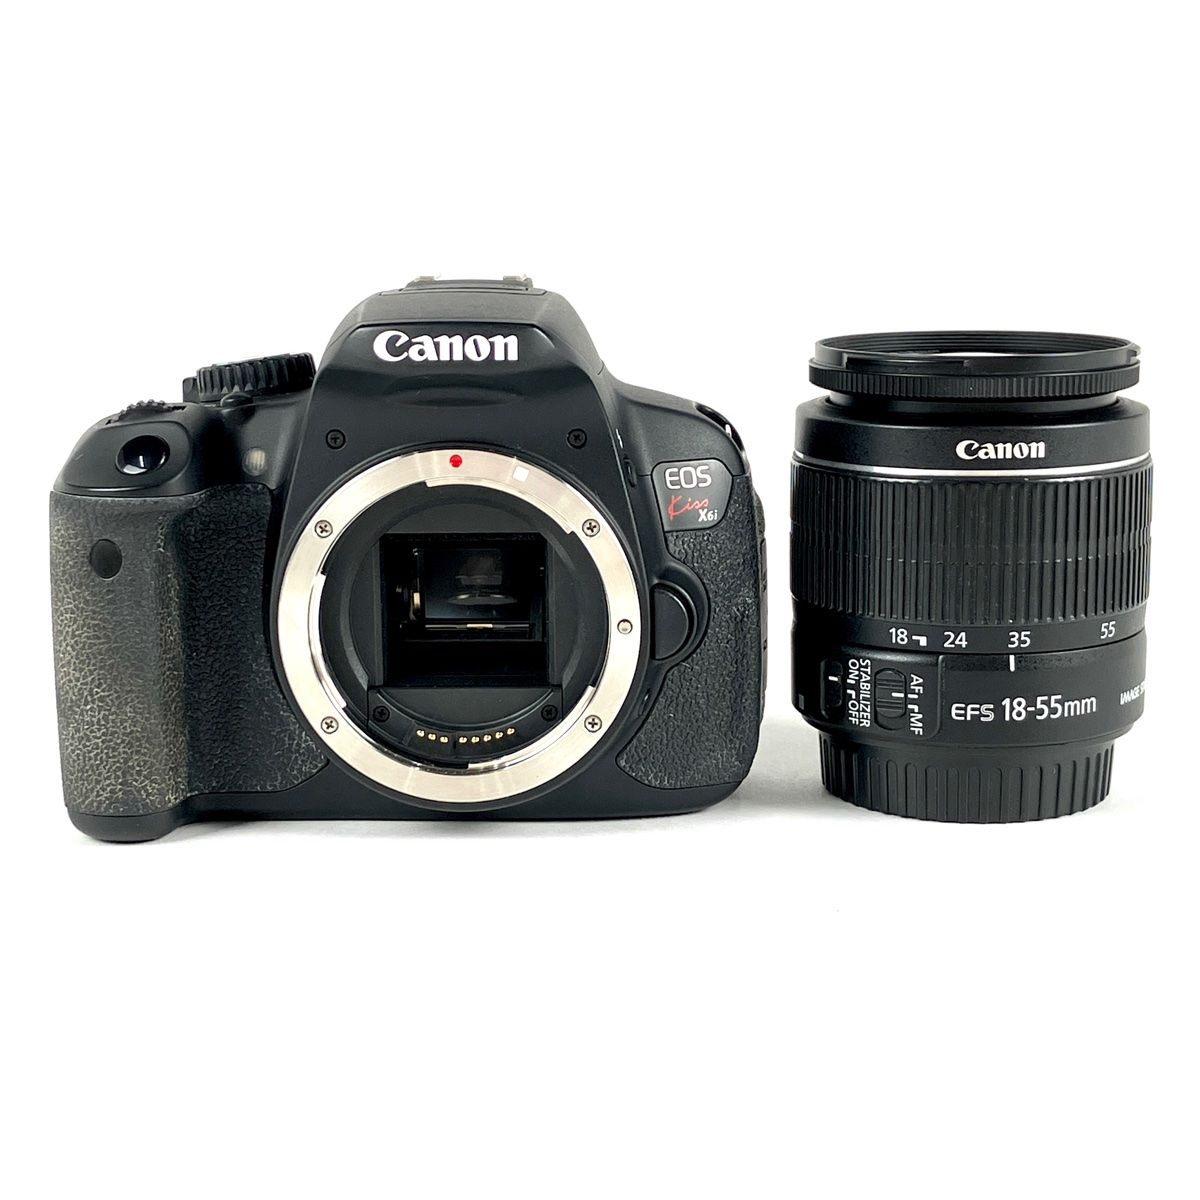 キヤノン Canon EOS Kiss X6i レンズキット デジタル 一眼レフカメラ